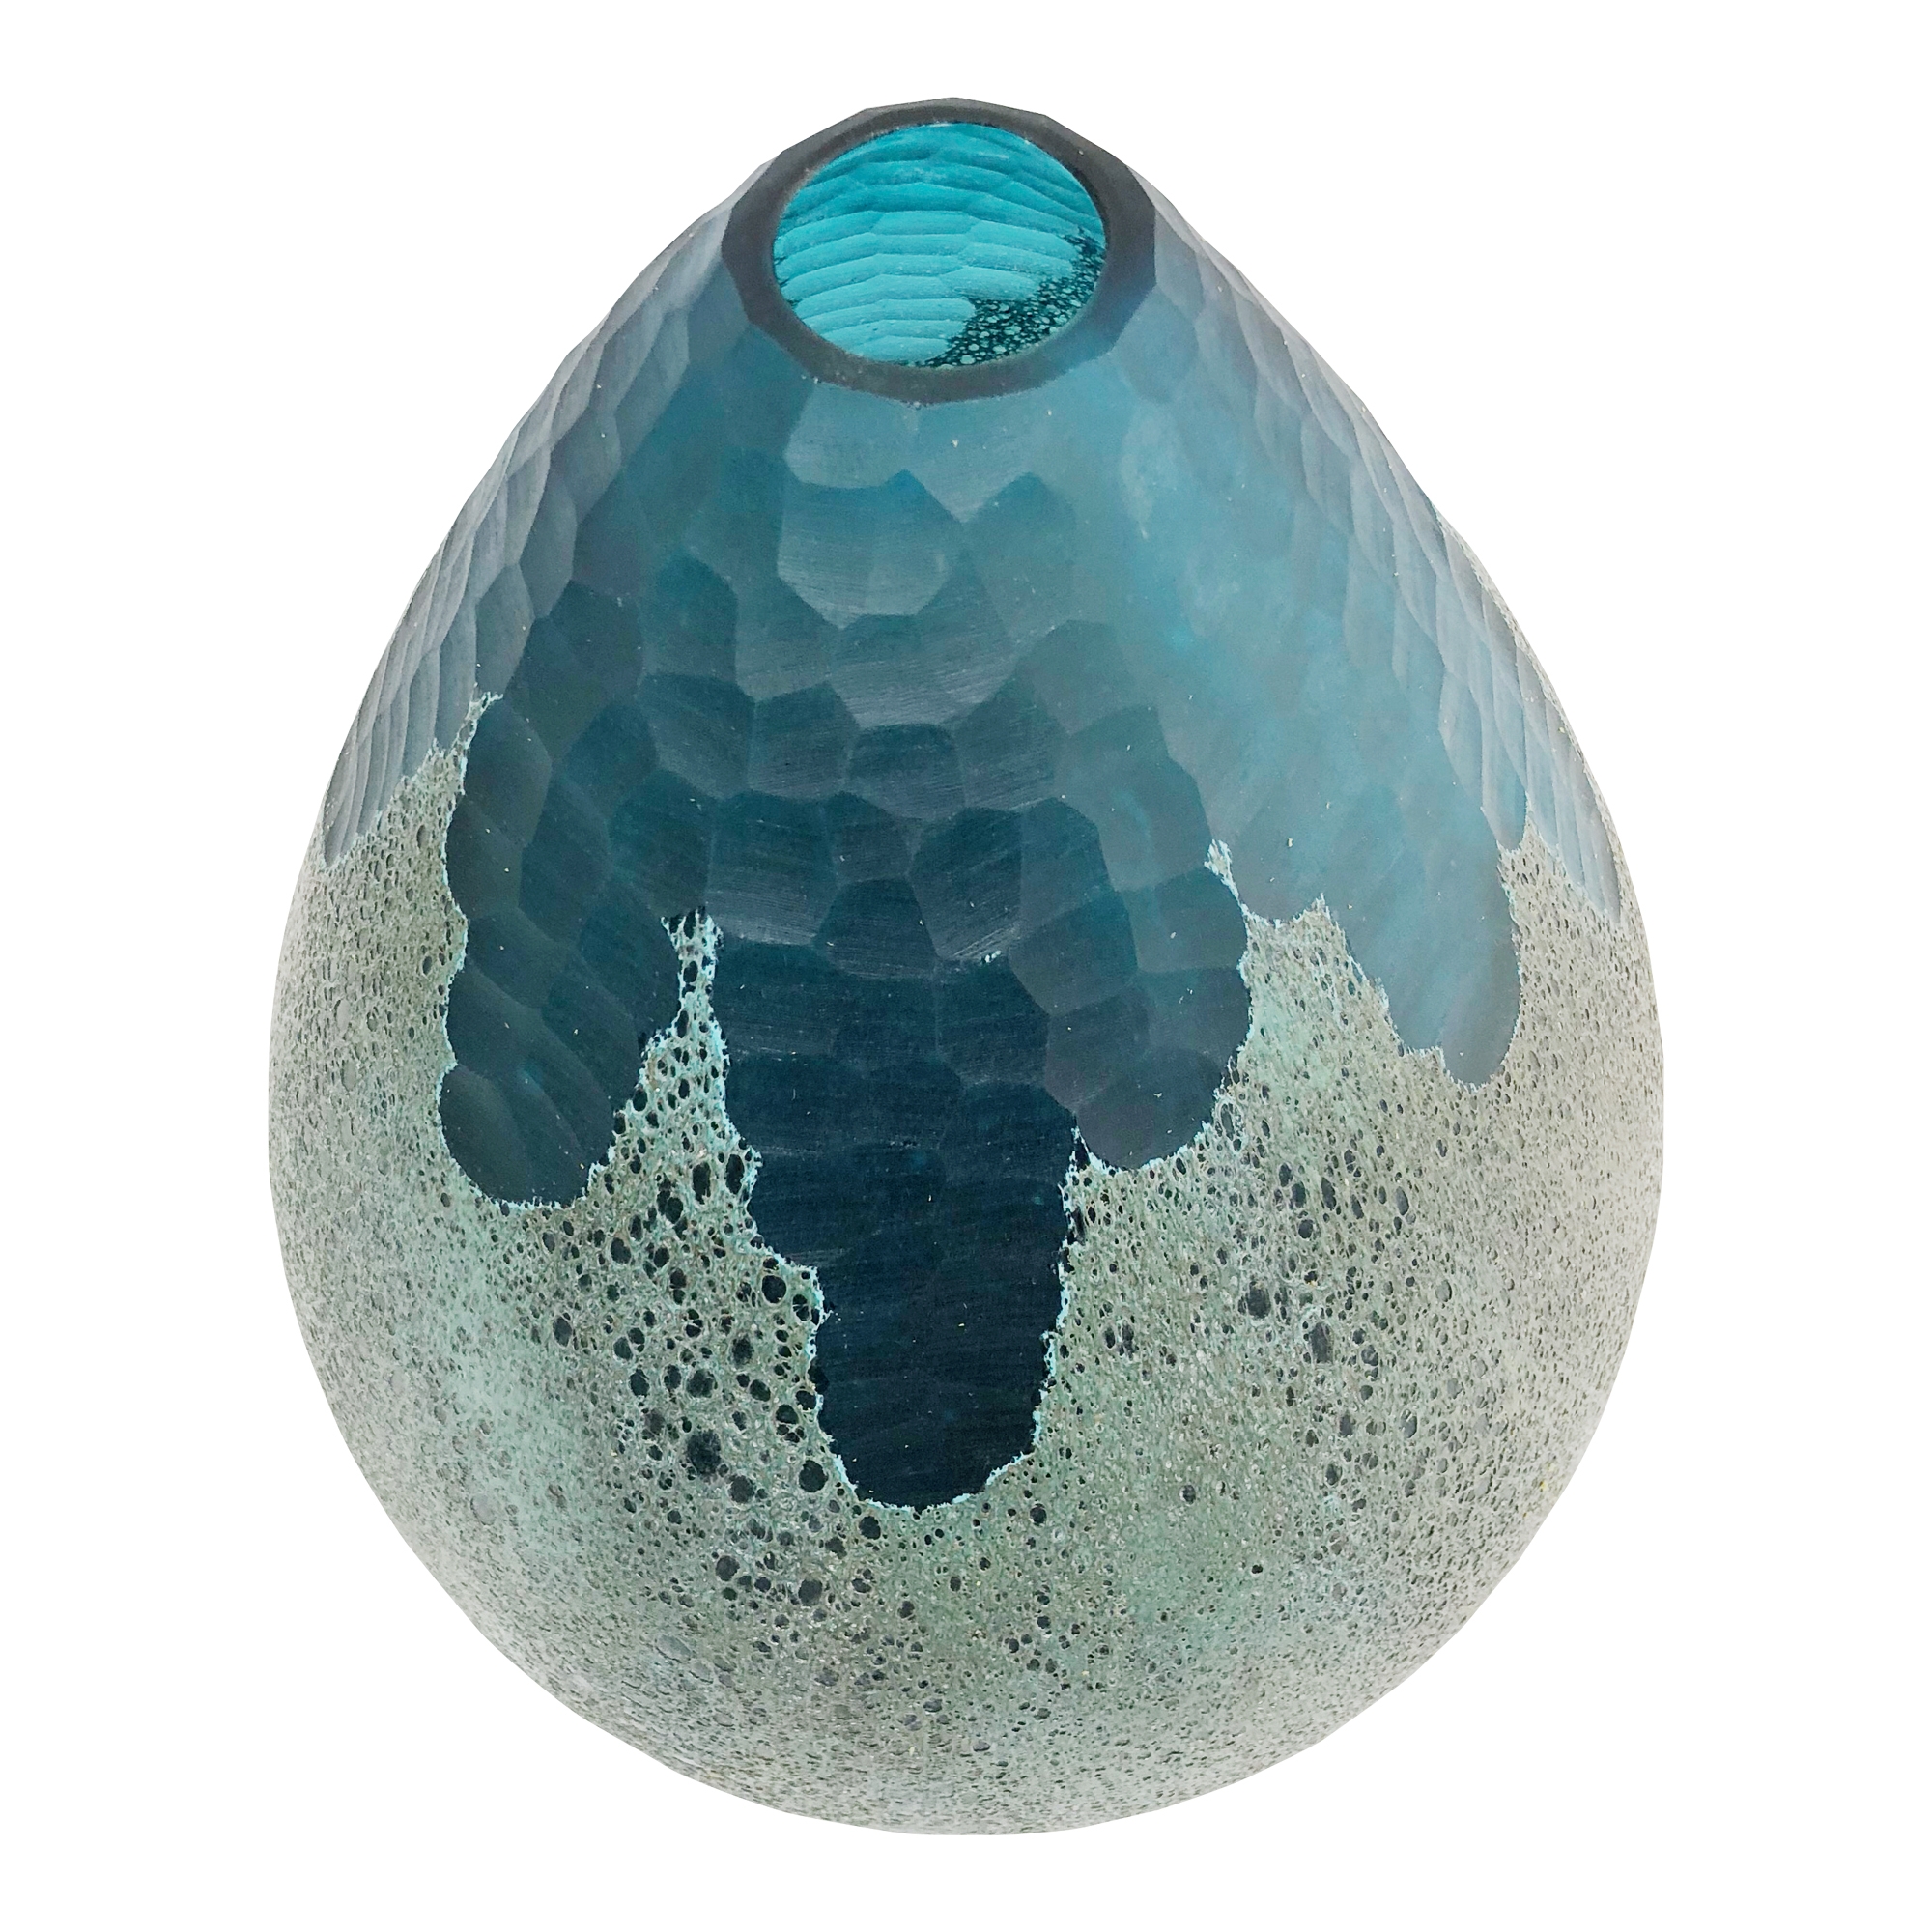 Droplette Vase - Image 1